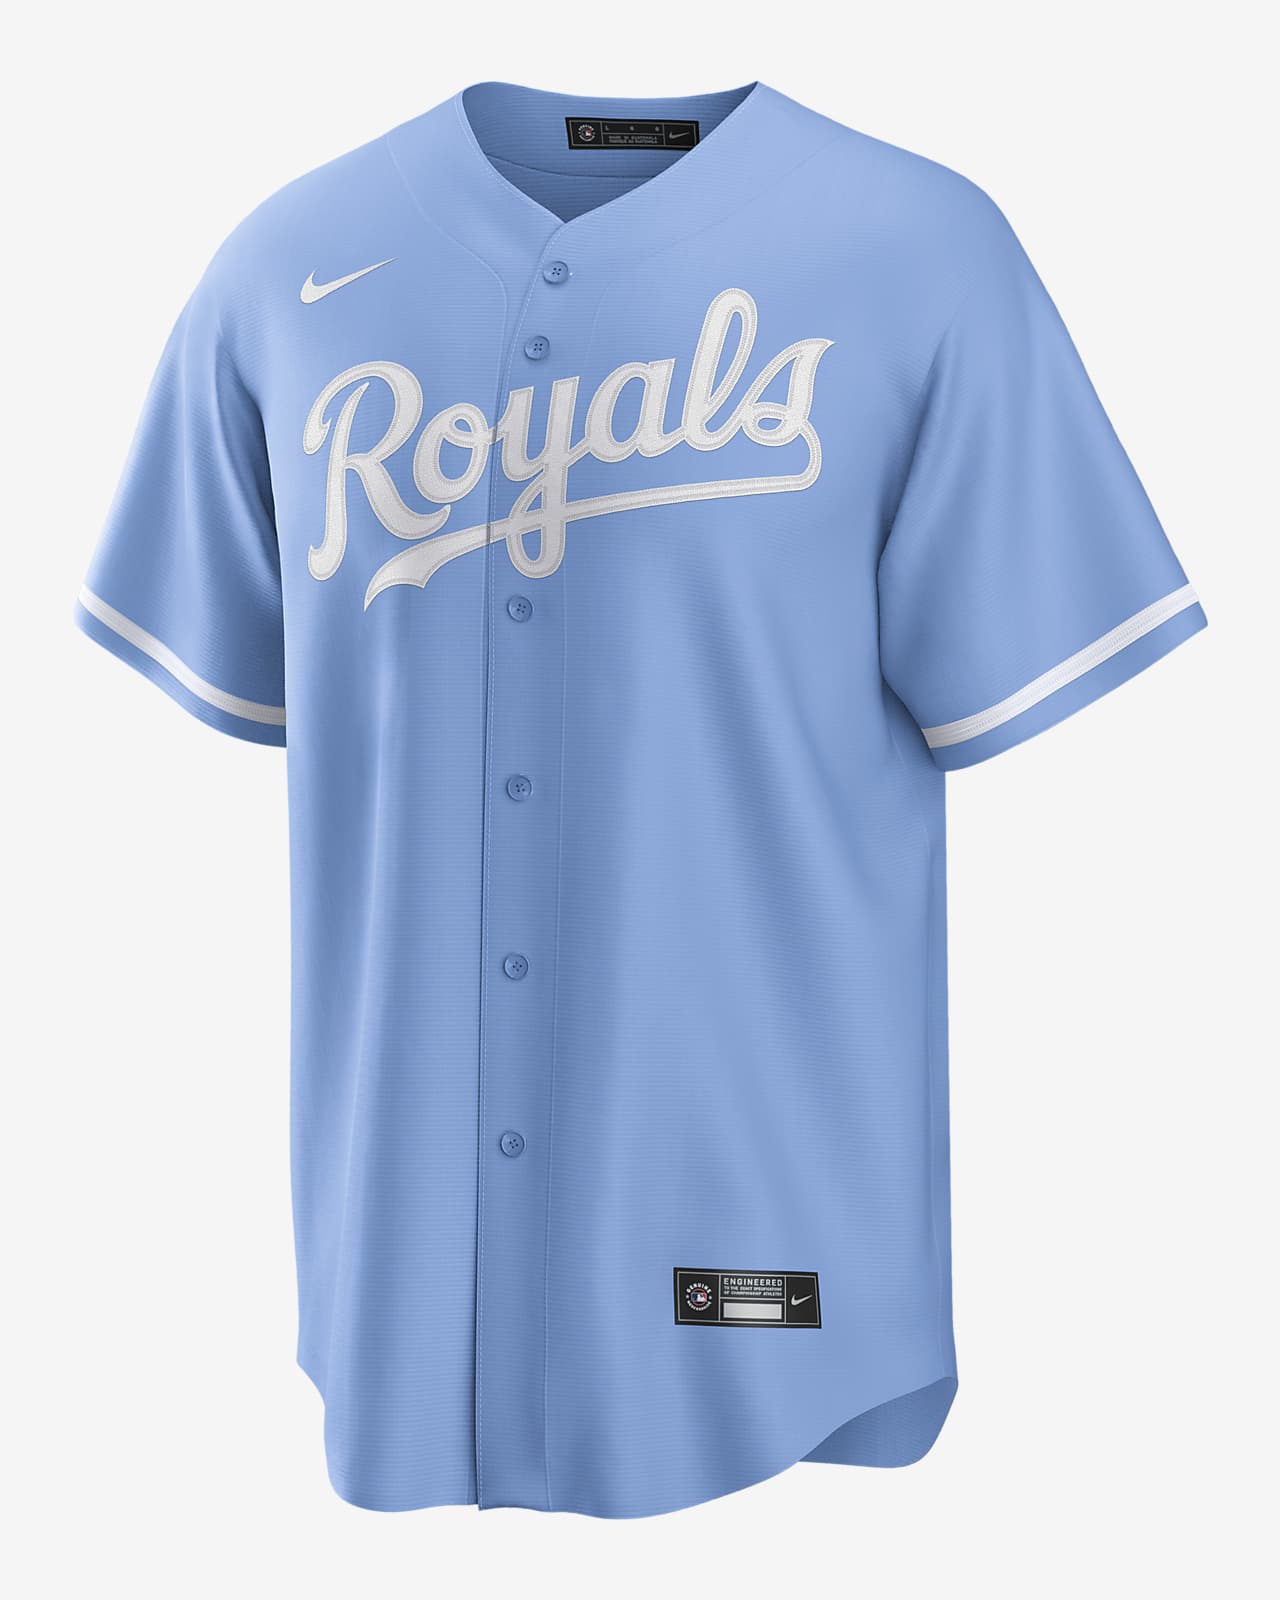 blue kc royals jersey